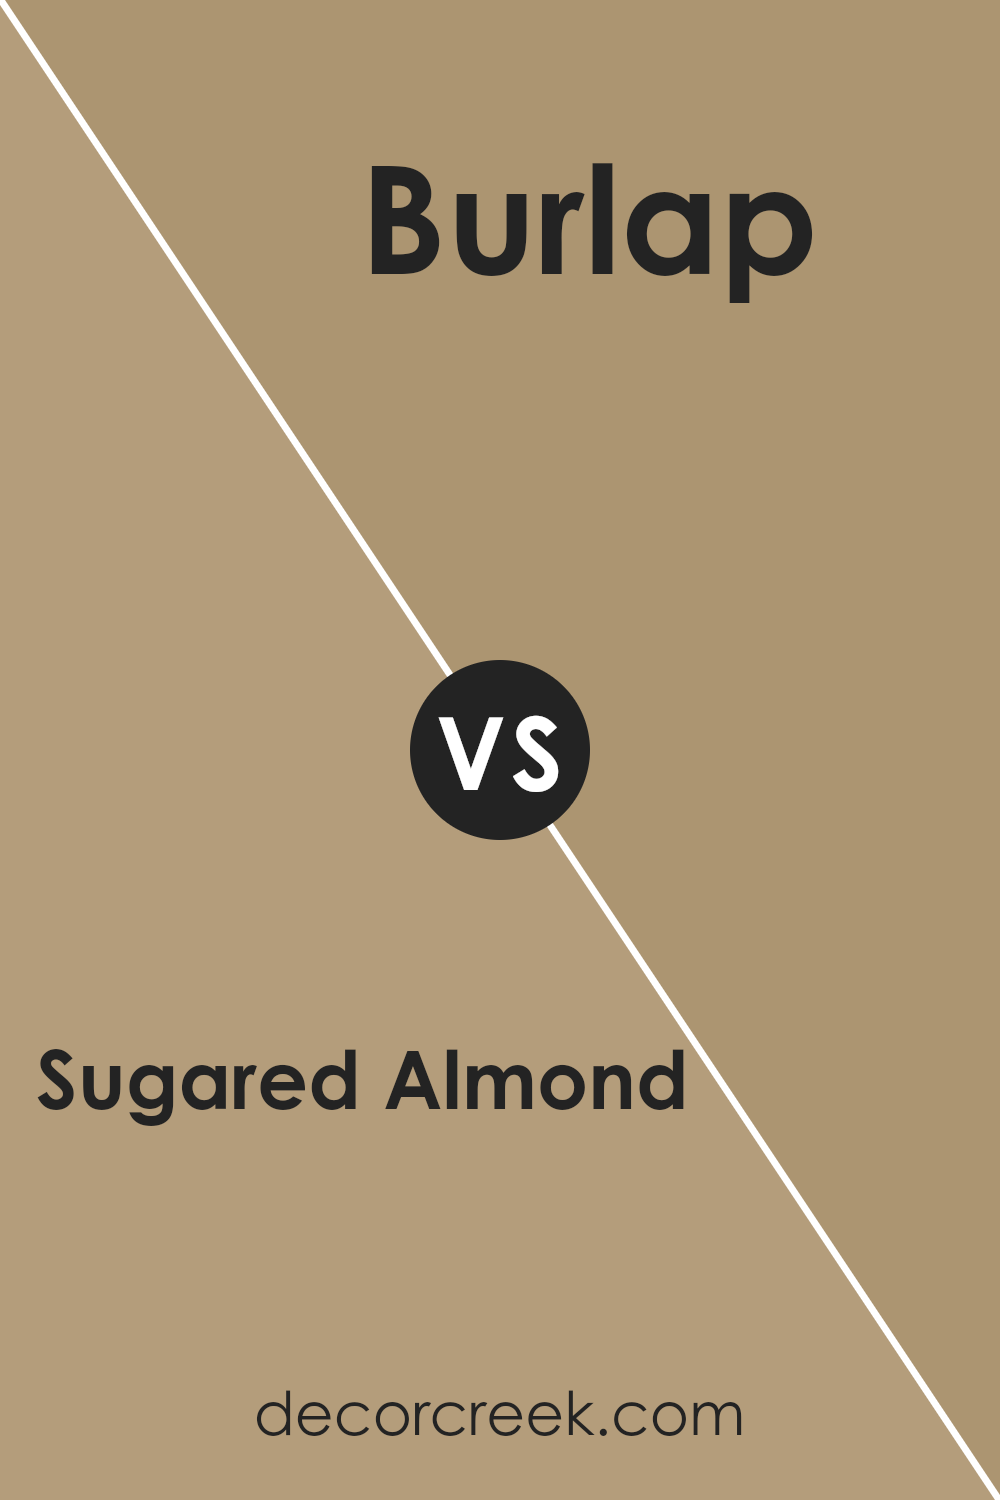 sugared_almond_sw_9537_vs_burlap_sw_6137